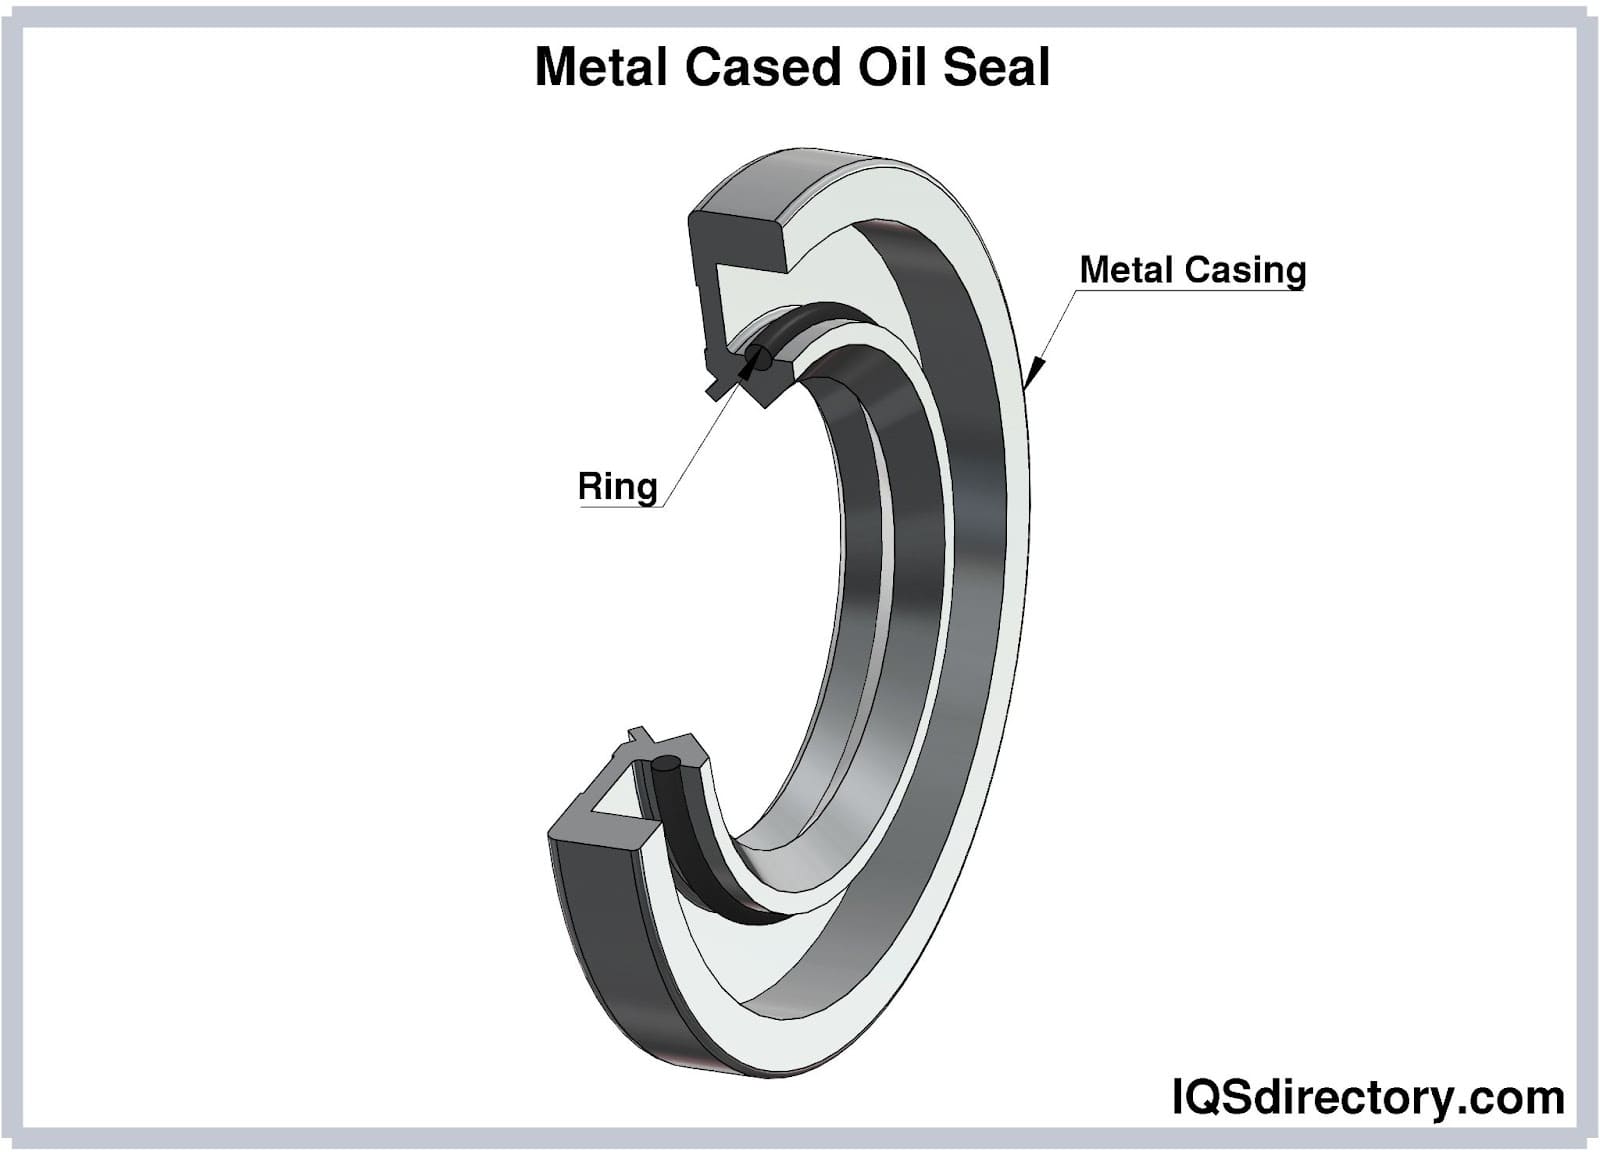 Metal Cased Oil Seal